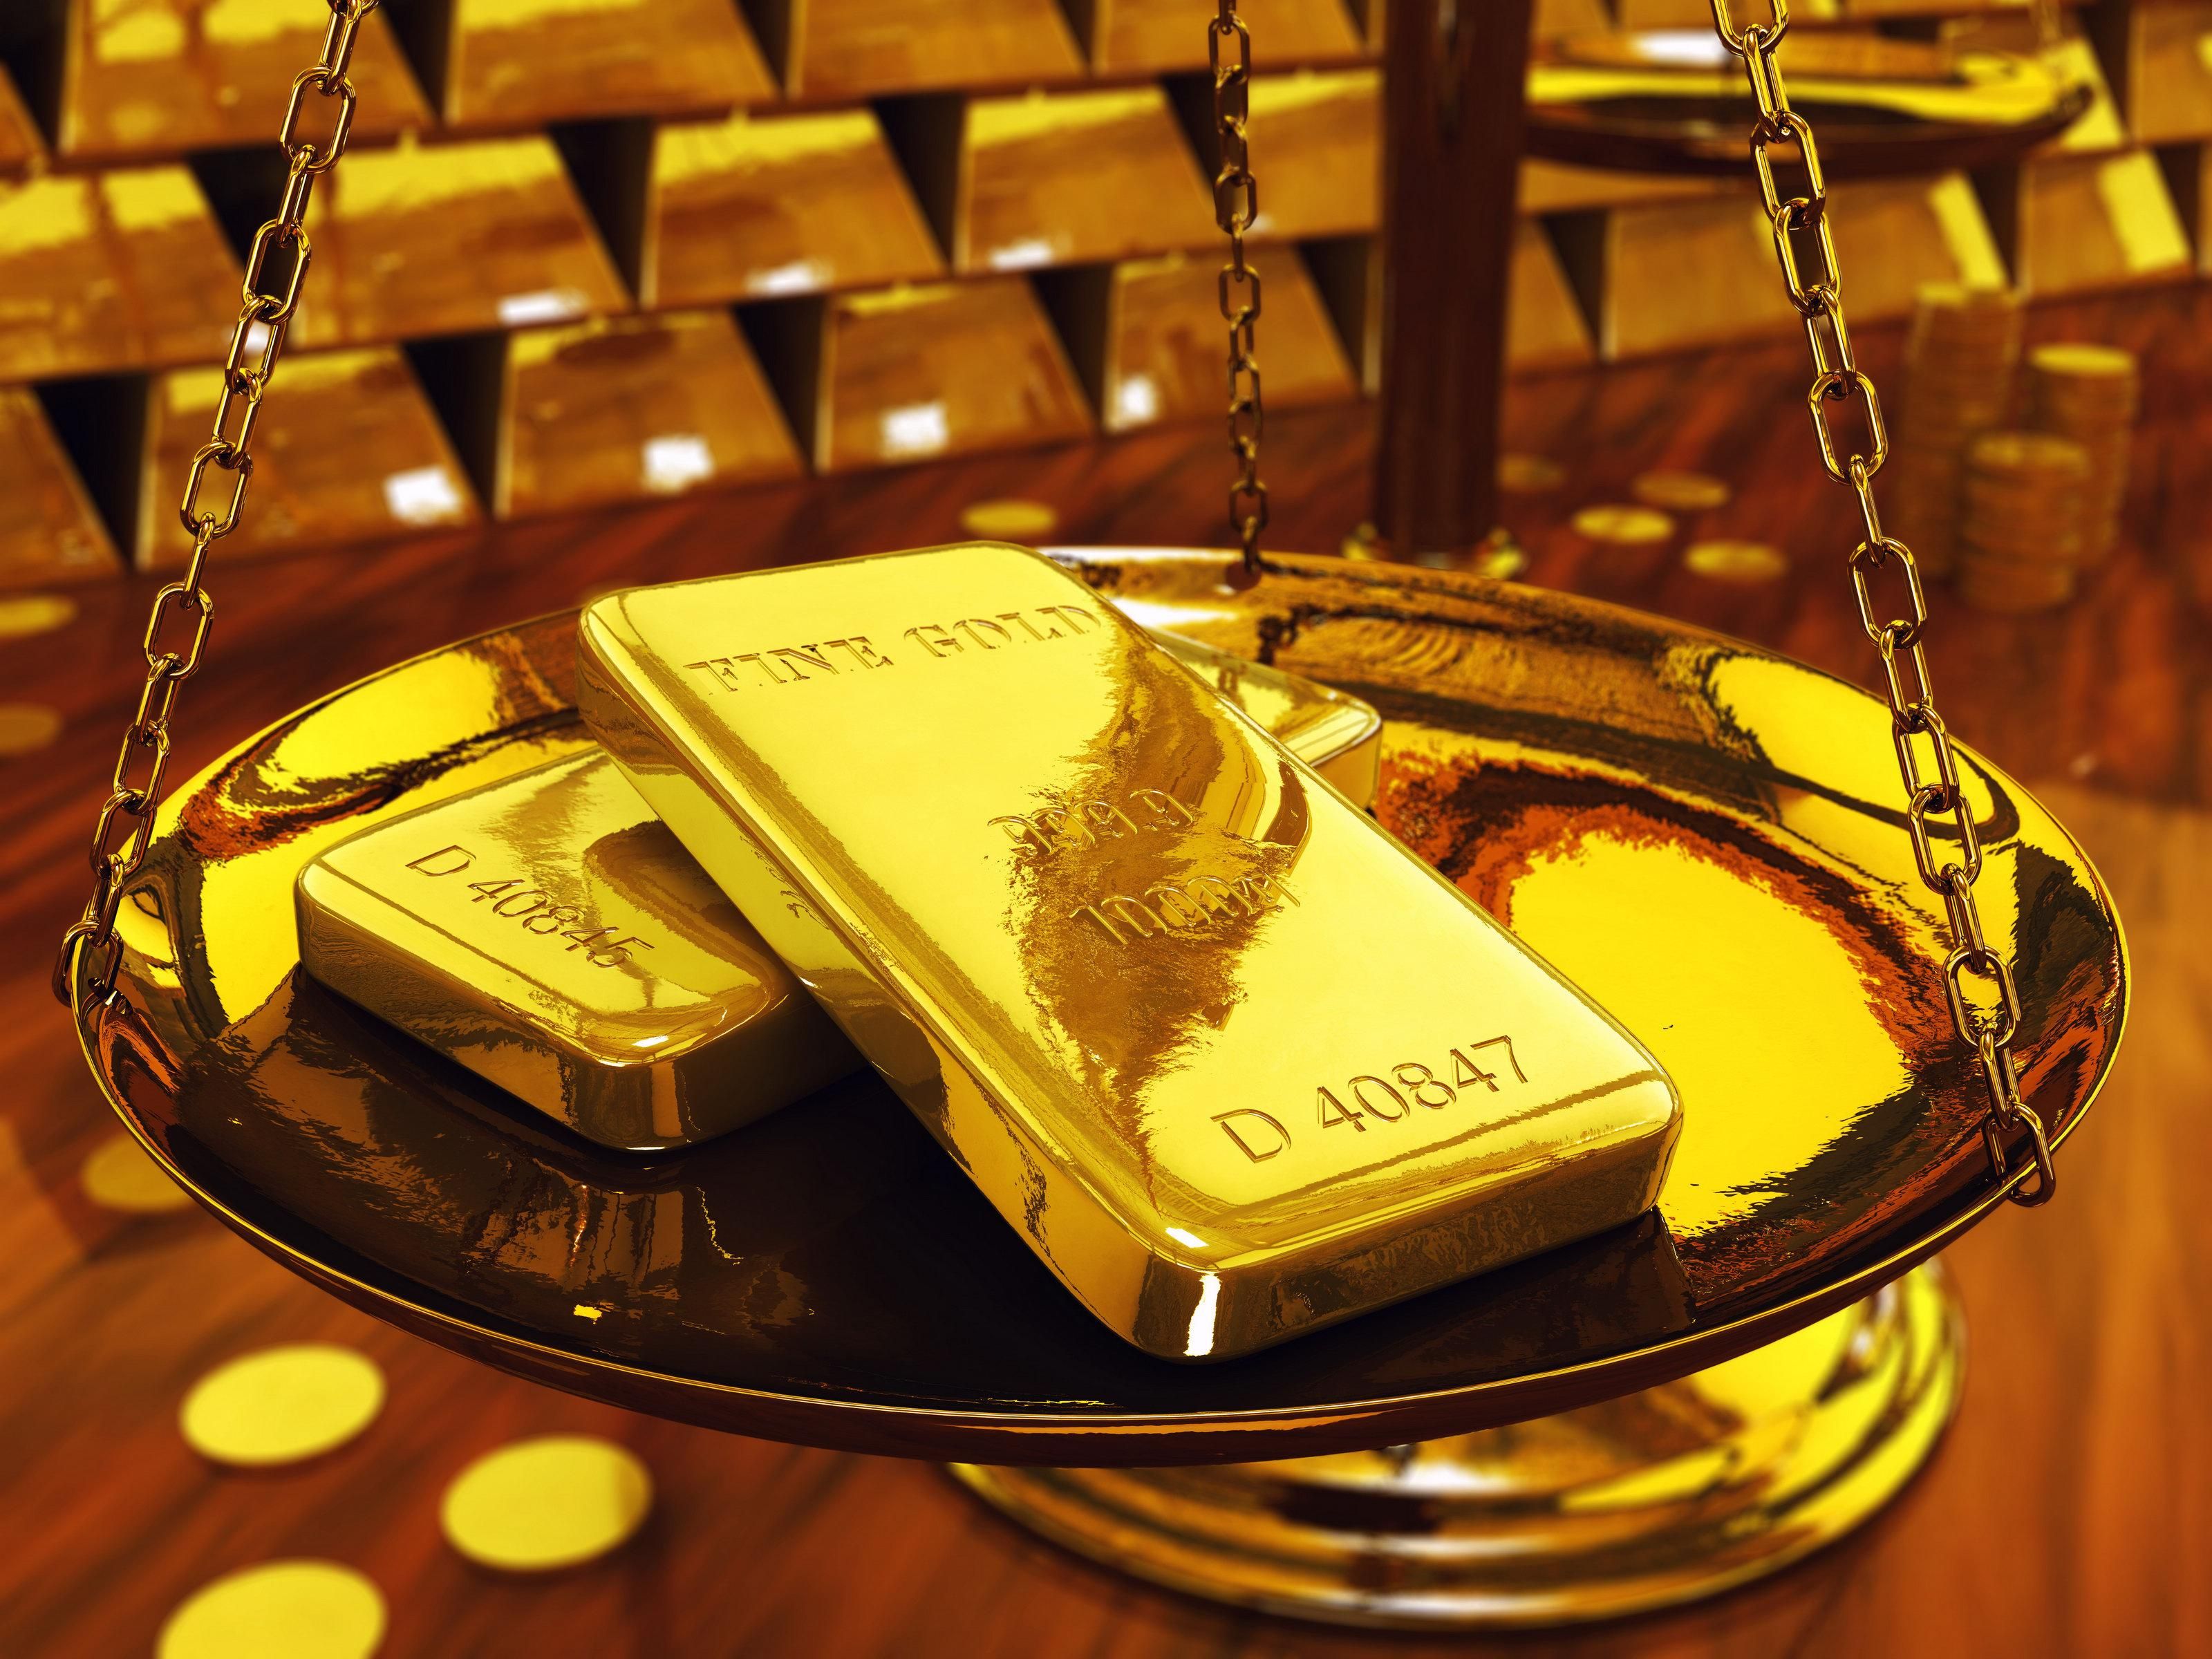 Украинцы покупают по три килограмма золота на неделю